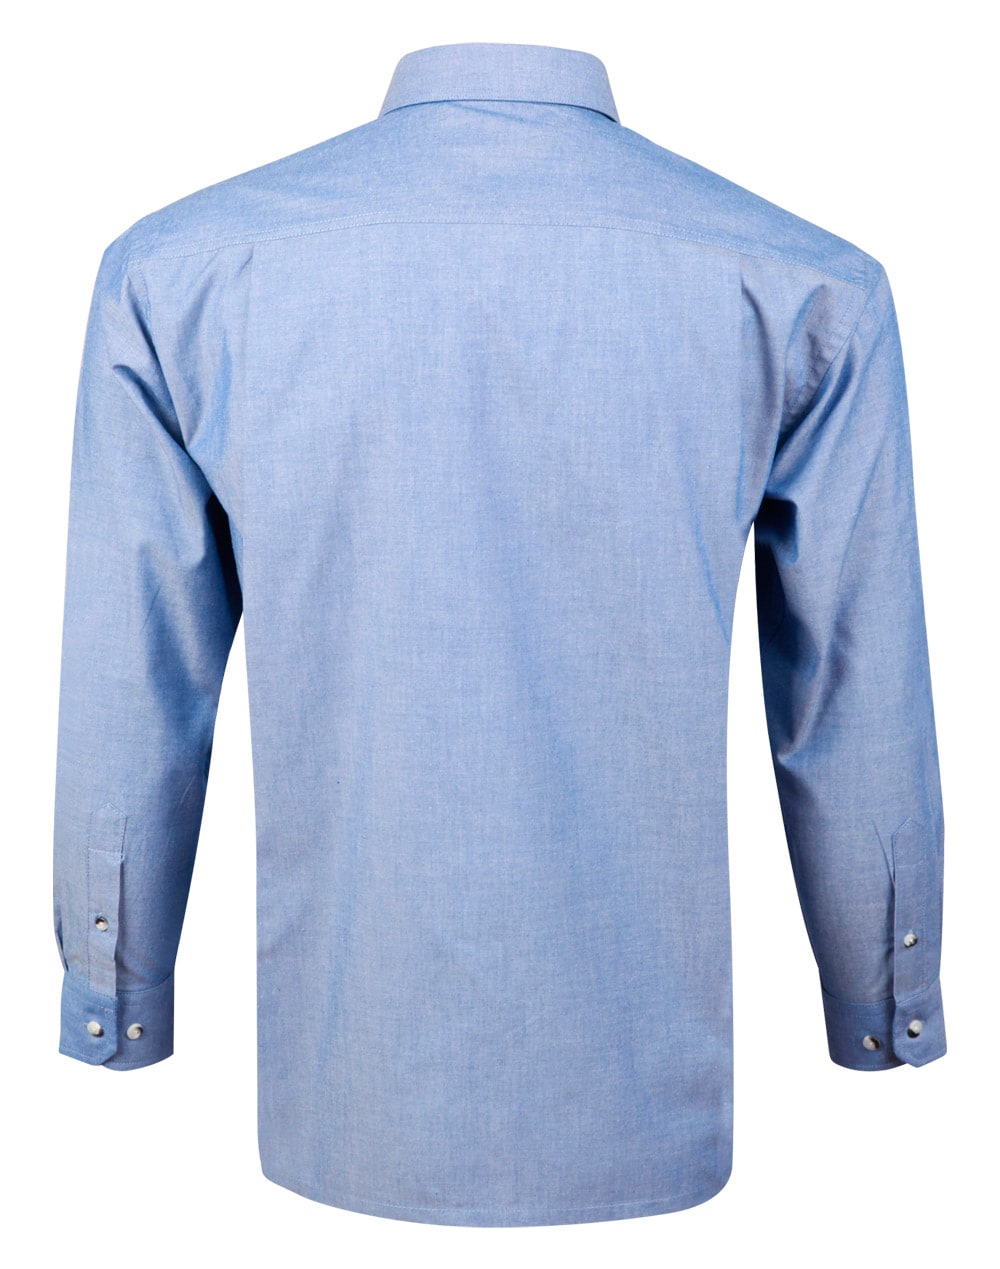 Chambray Shirt Long Sleeve | At-Call Safety